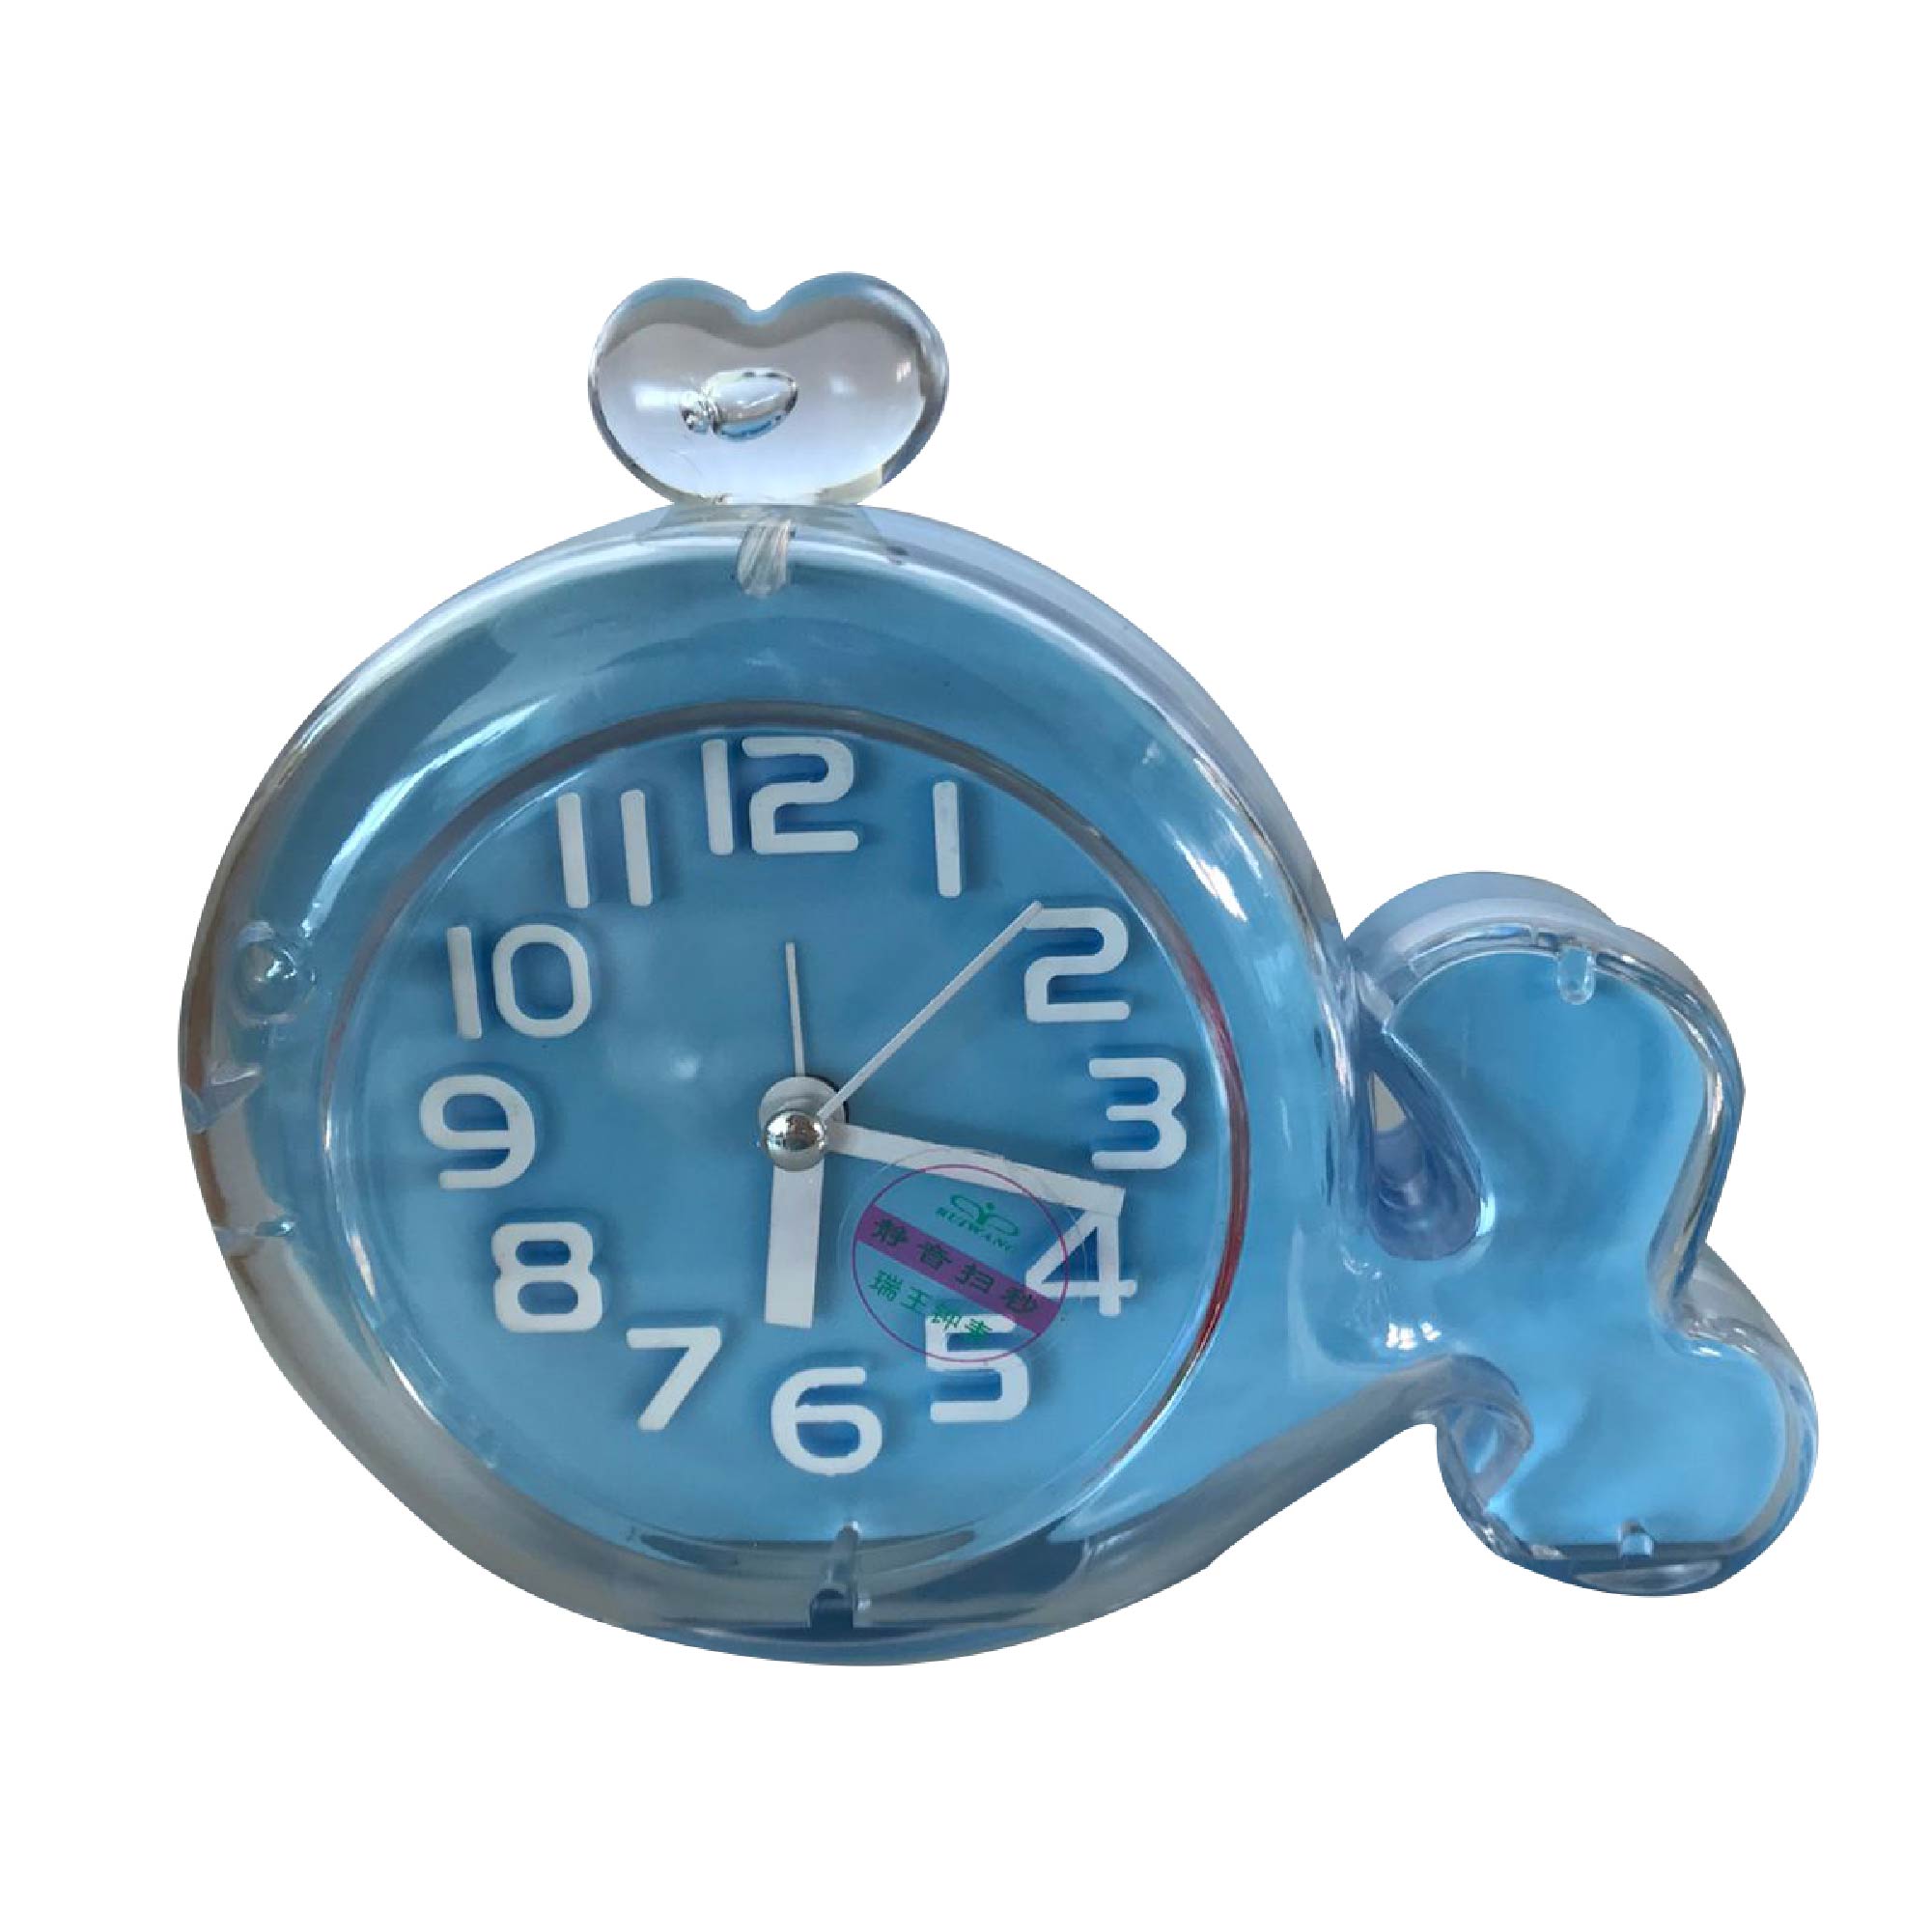 Ruiwang Clock Alarm Clock Blue, NO881B